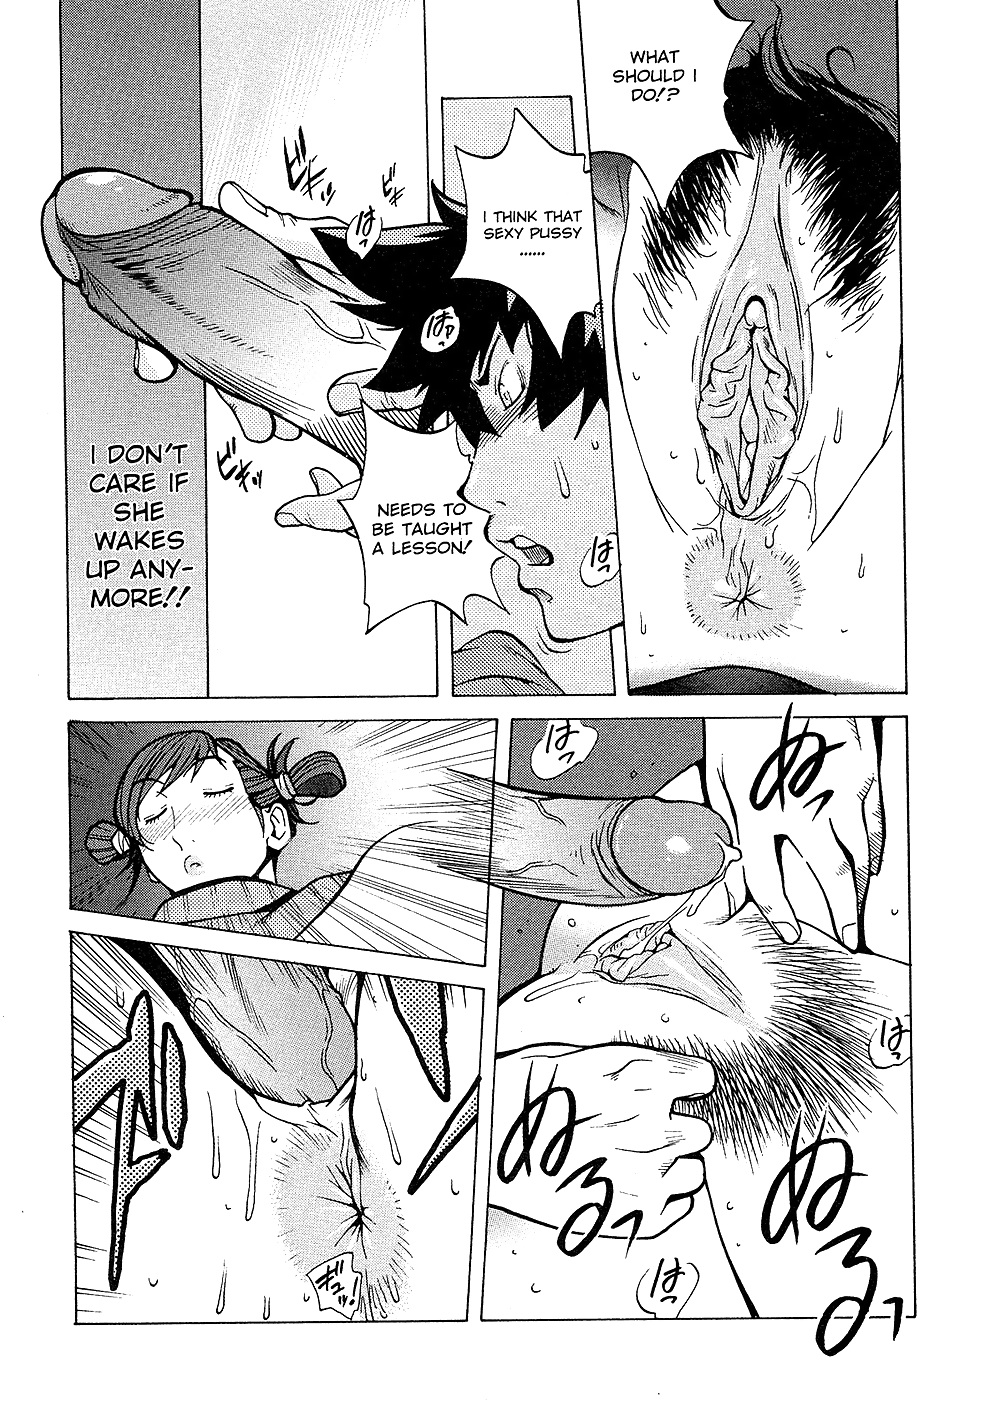 (comic hentai) yumisuke kotoyoshi erotic works #2
 #21624091